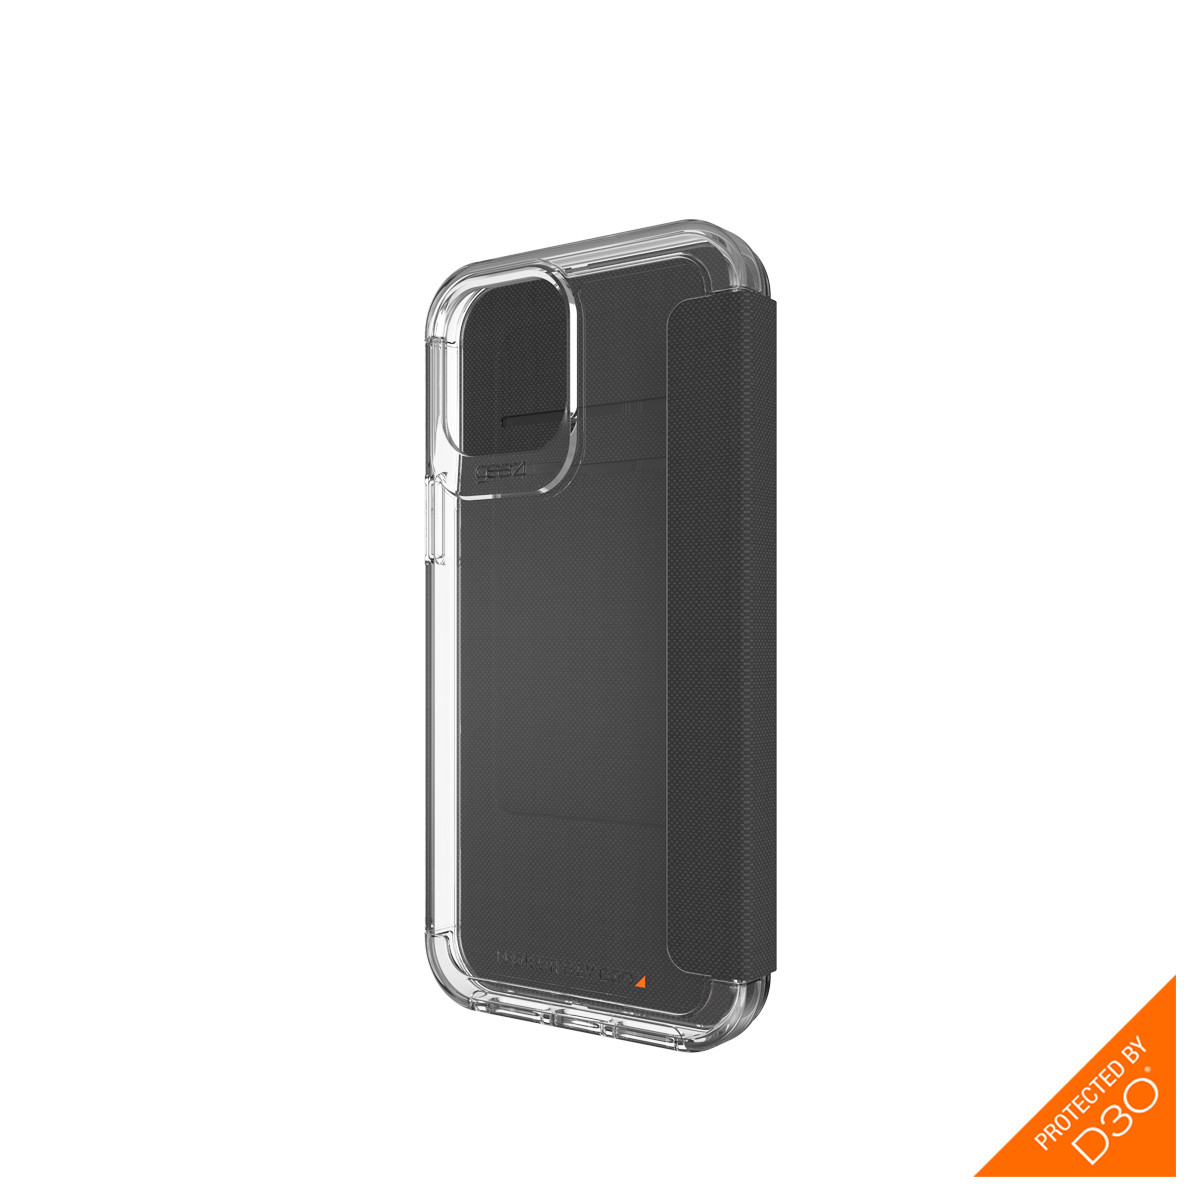 Ốp lưng Gear4 Wembley Flip iPhone - Công nghệ chống sốc độc quyền D3O, kháng khuẩn, tương thích tốt với sóng 5G - Hàng chính hãng